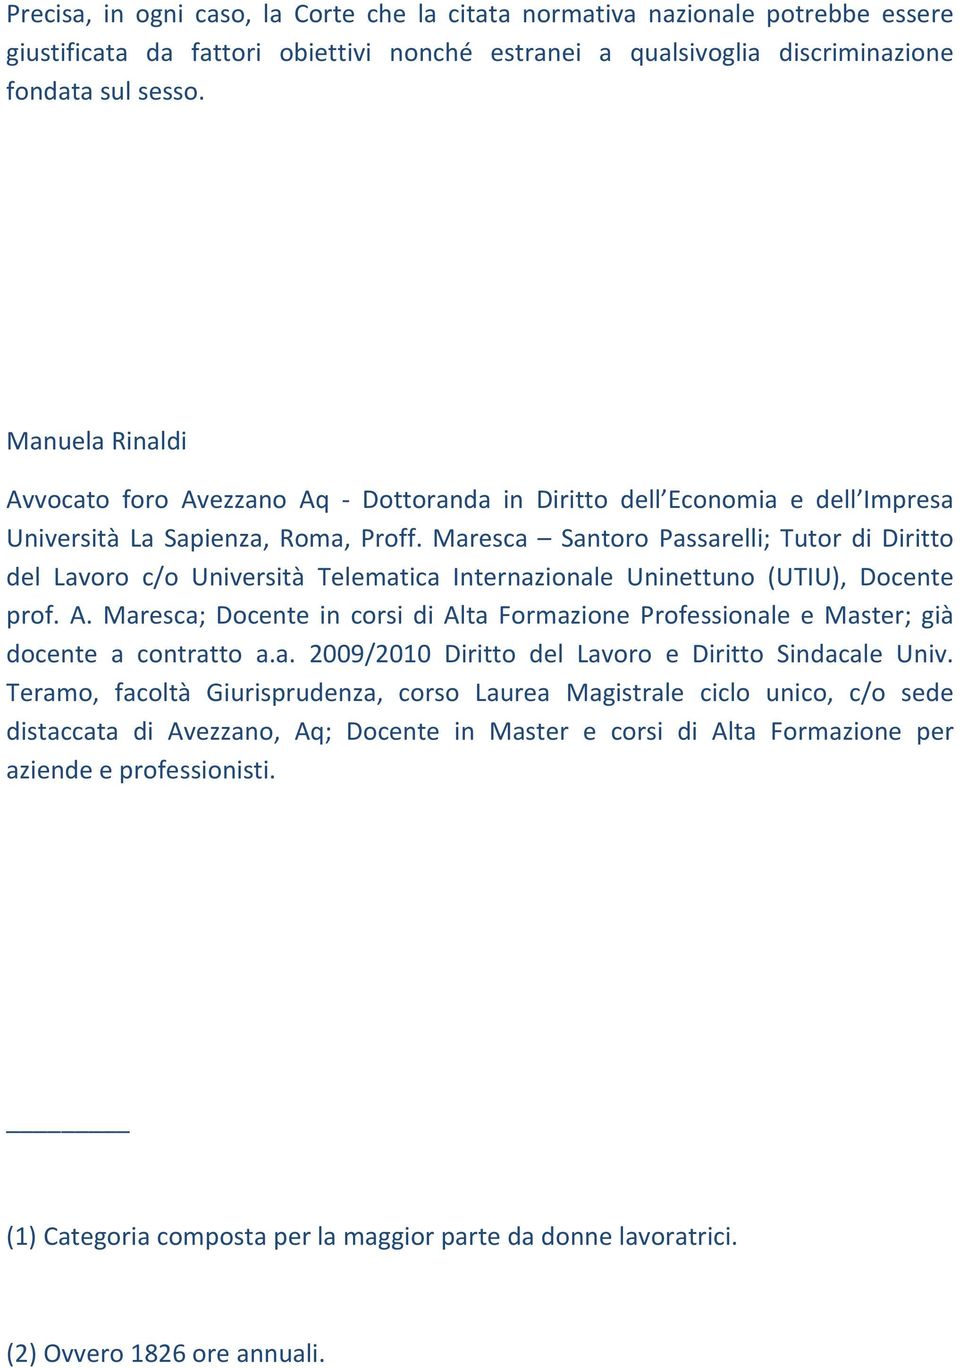 Maresca Santoro Passarelli; Tutor di Diritto del Lavoro c/o Università Telematica Internazionale Uninettuno (UTIU), Docente prof. A.